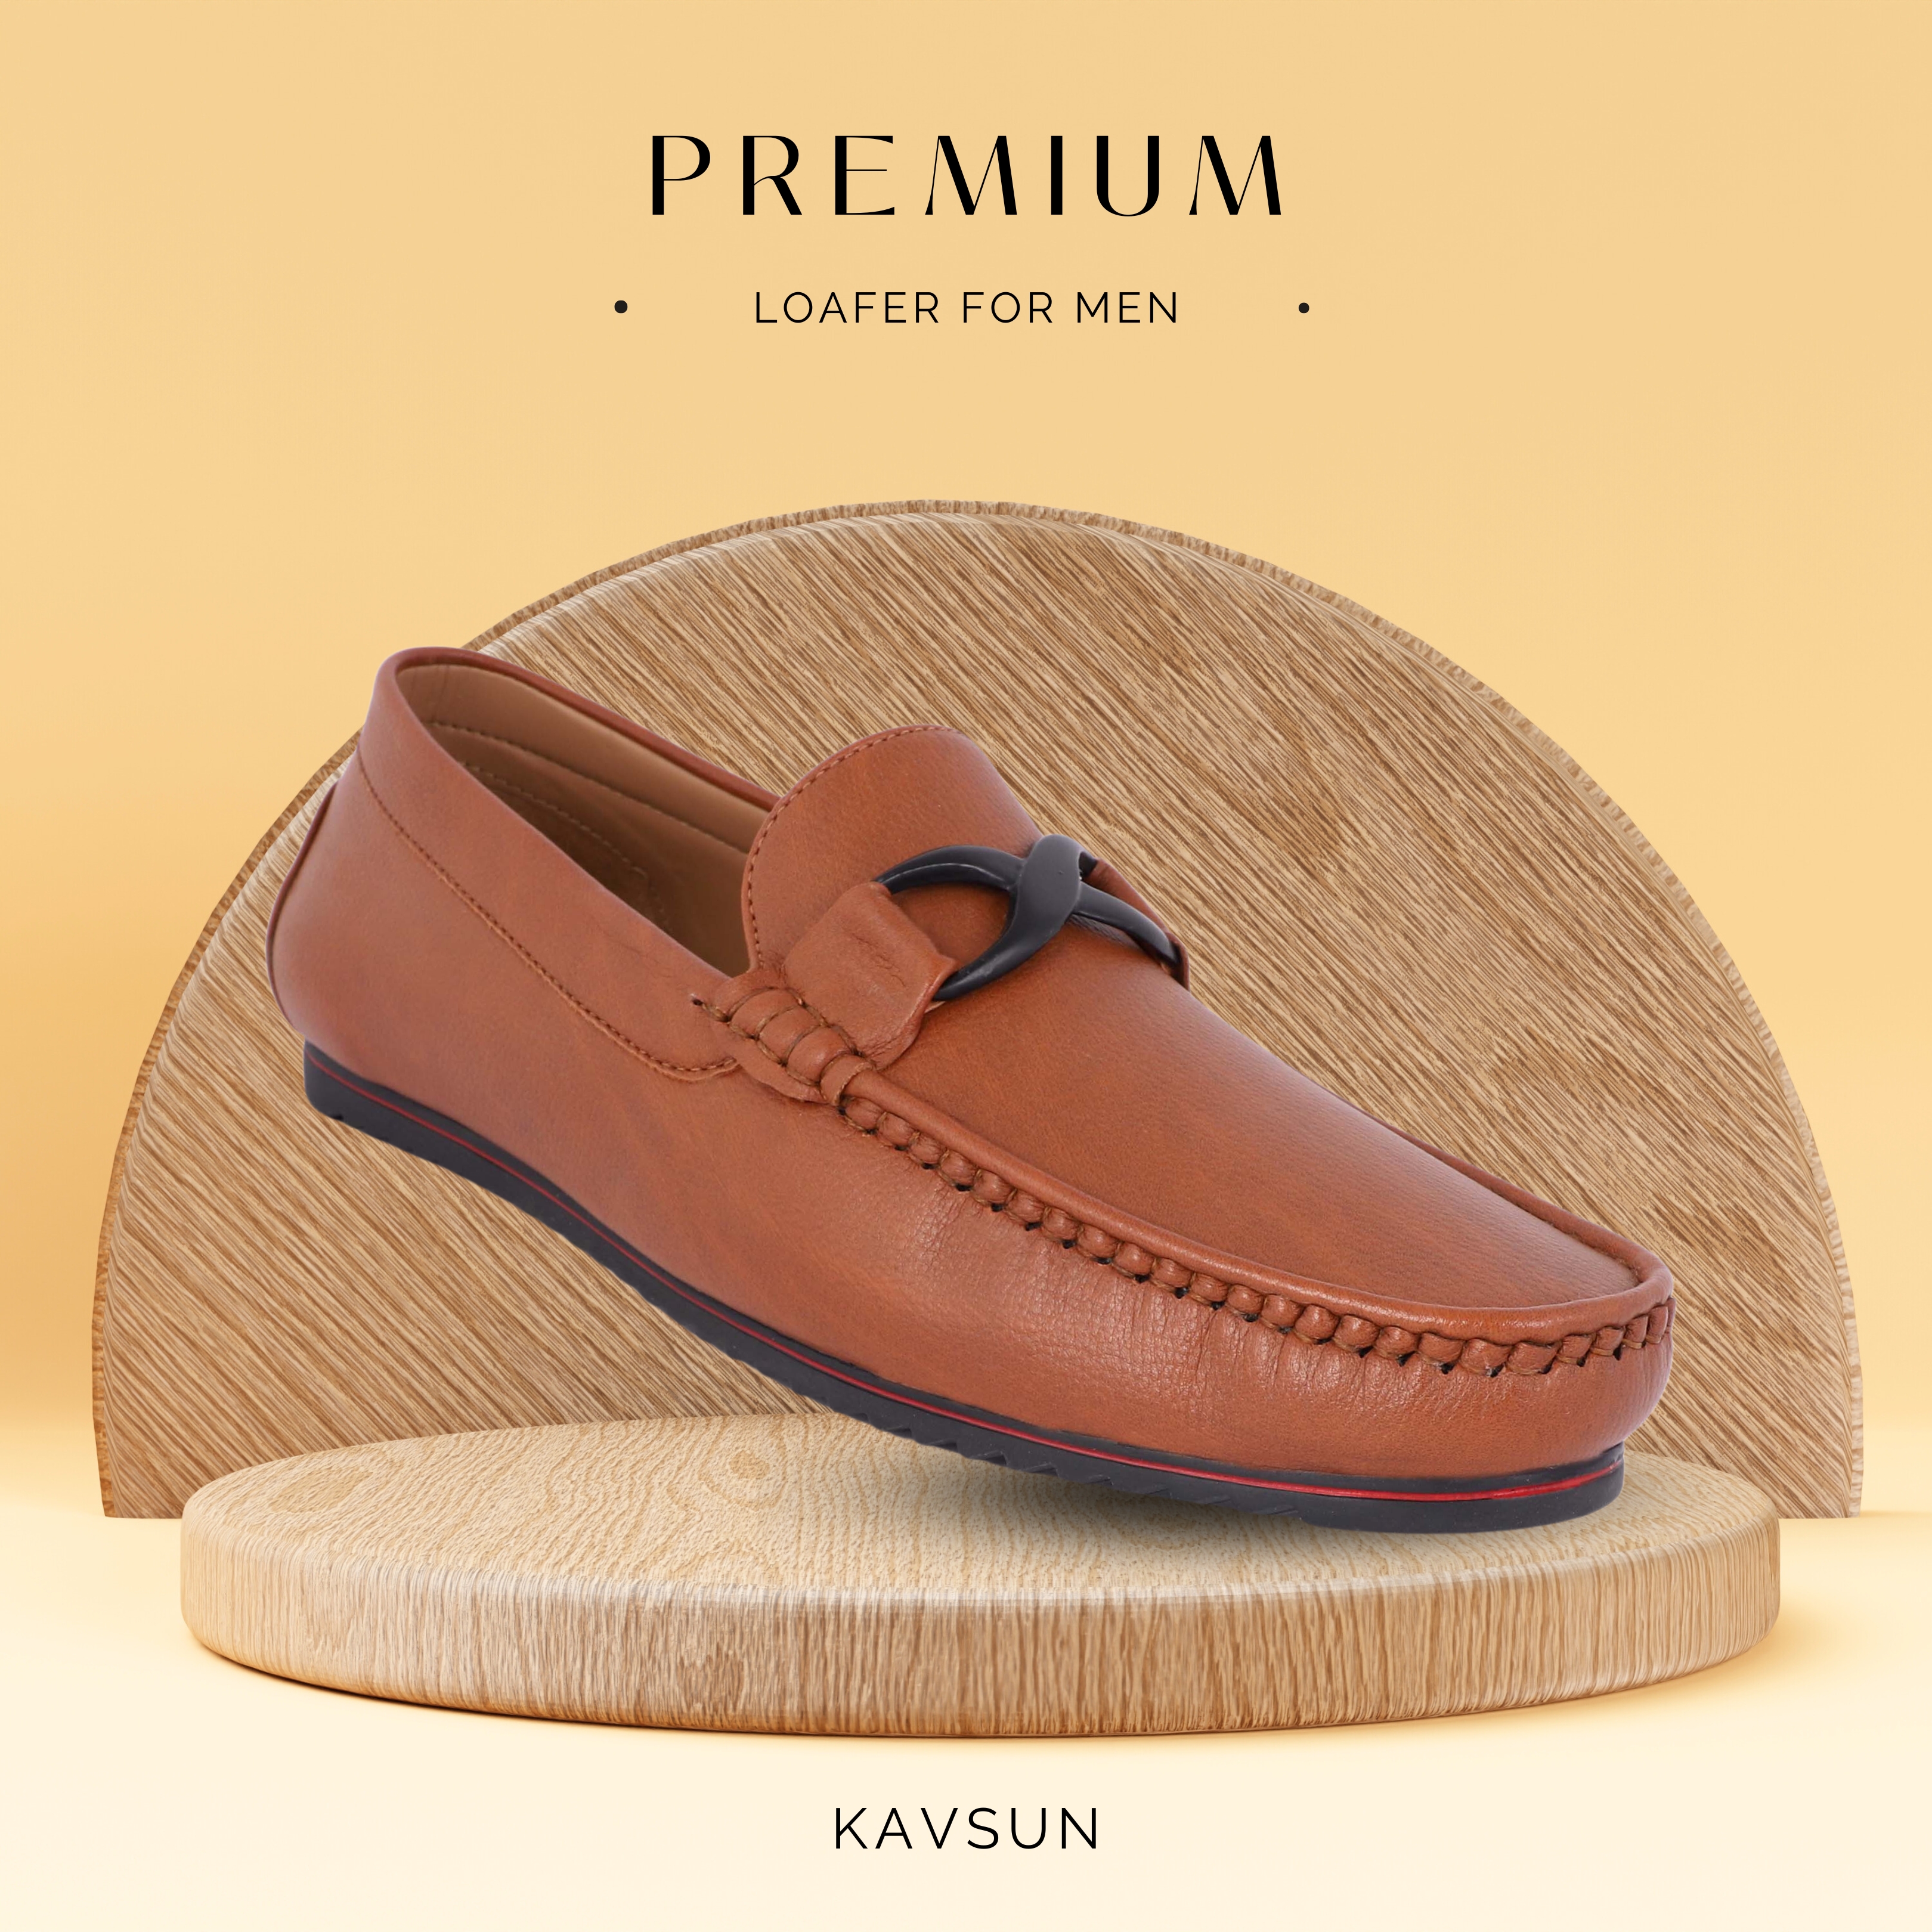 KAVSUN Attractive Premium LoaferForMen